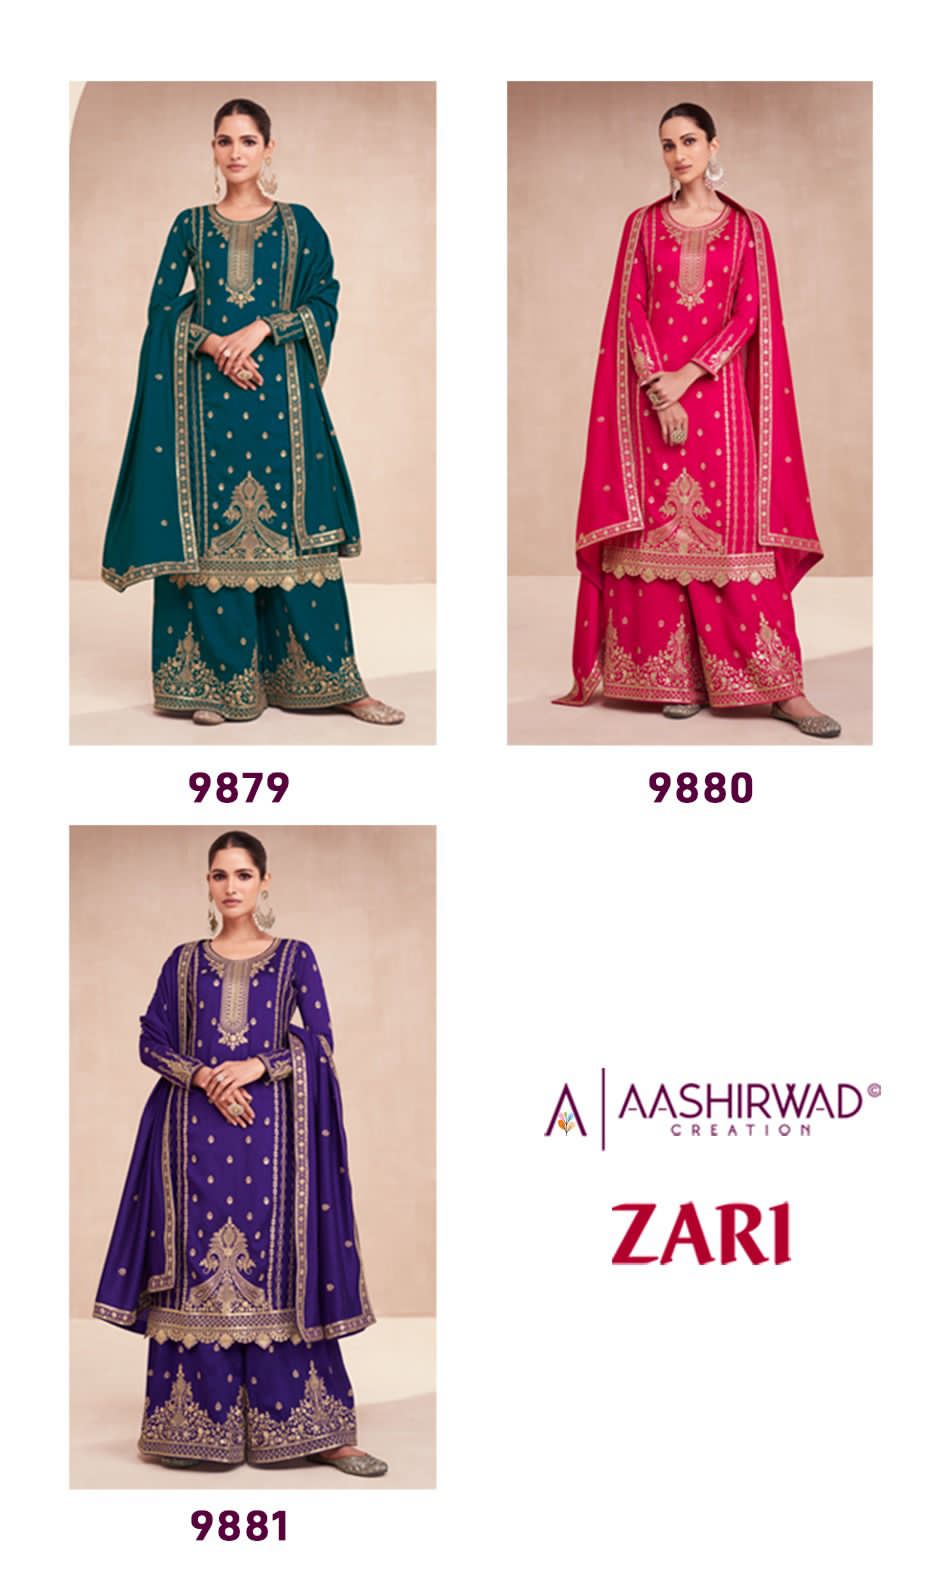 Aashirward Zari collection 4